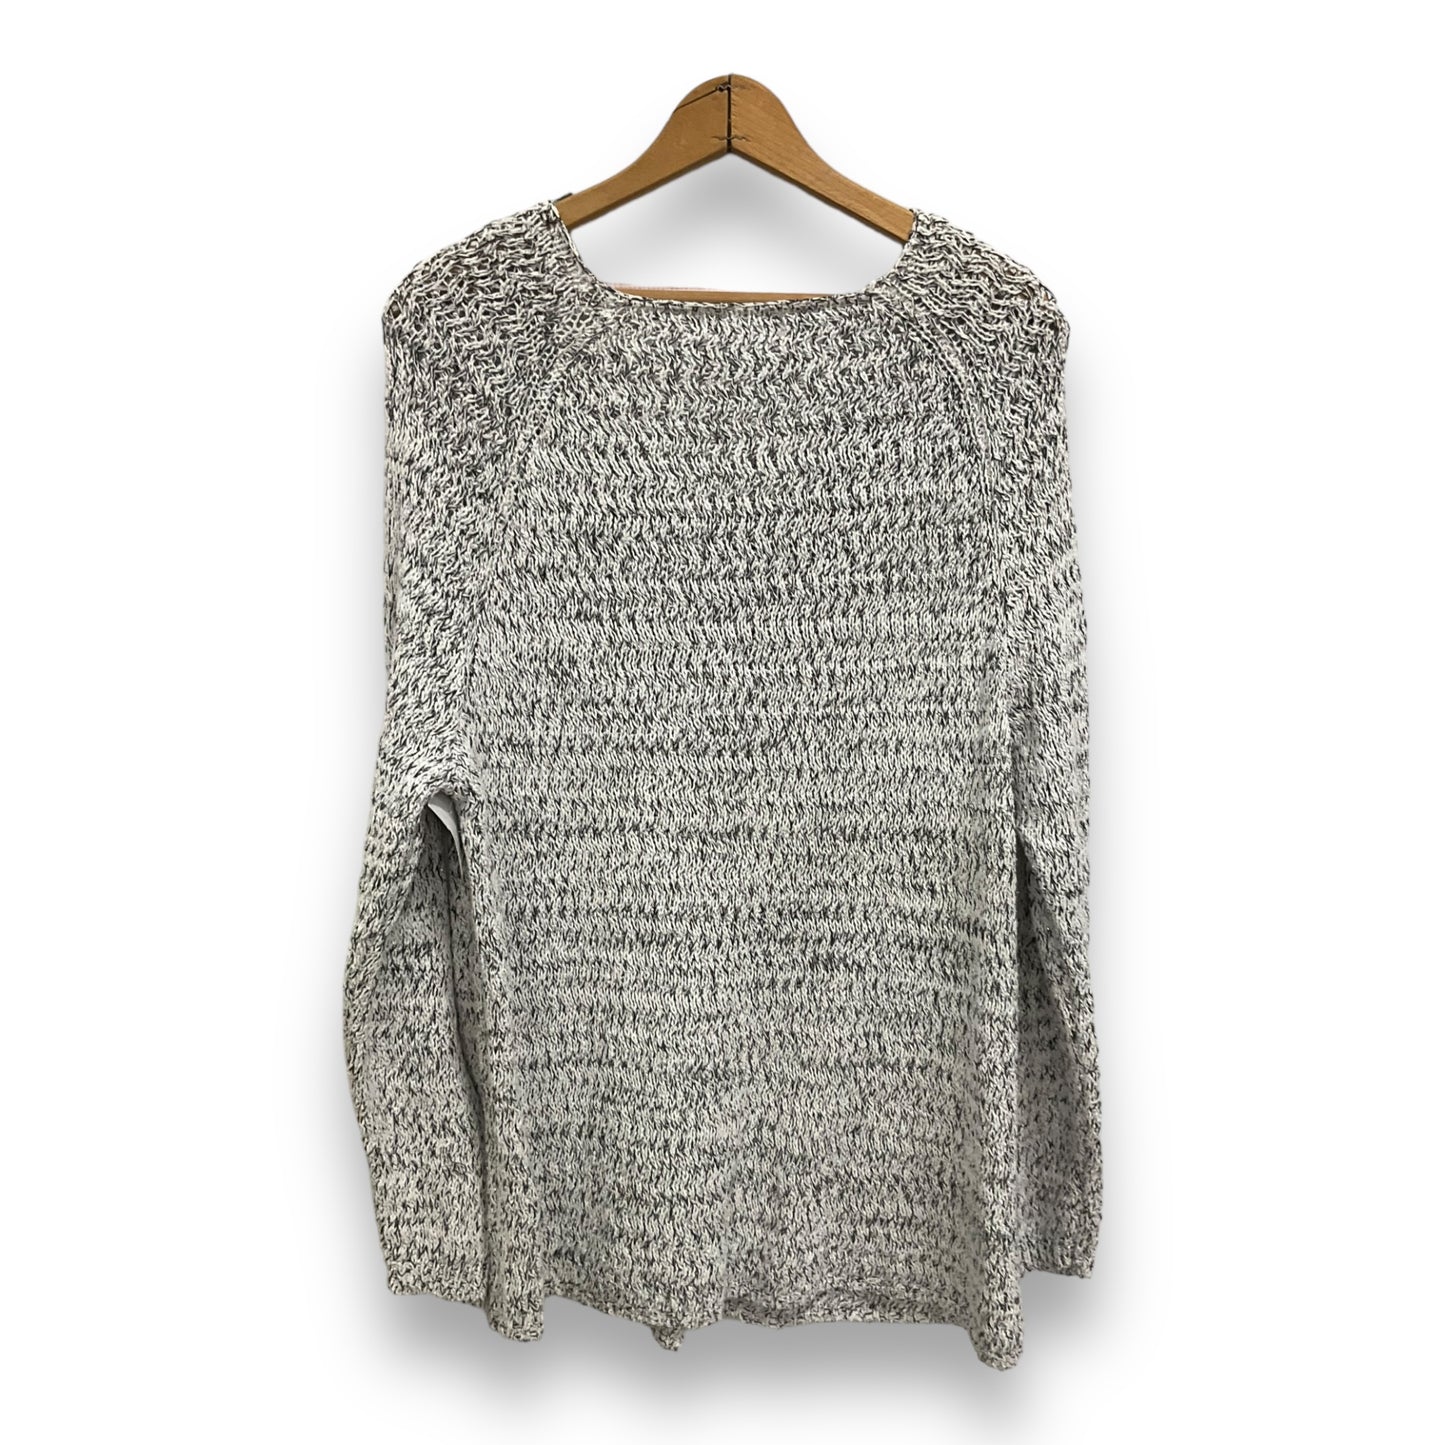 Sweater By Dressbarn  Size: 3x